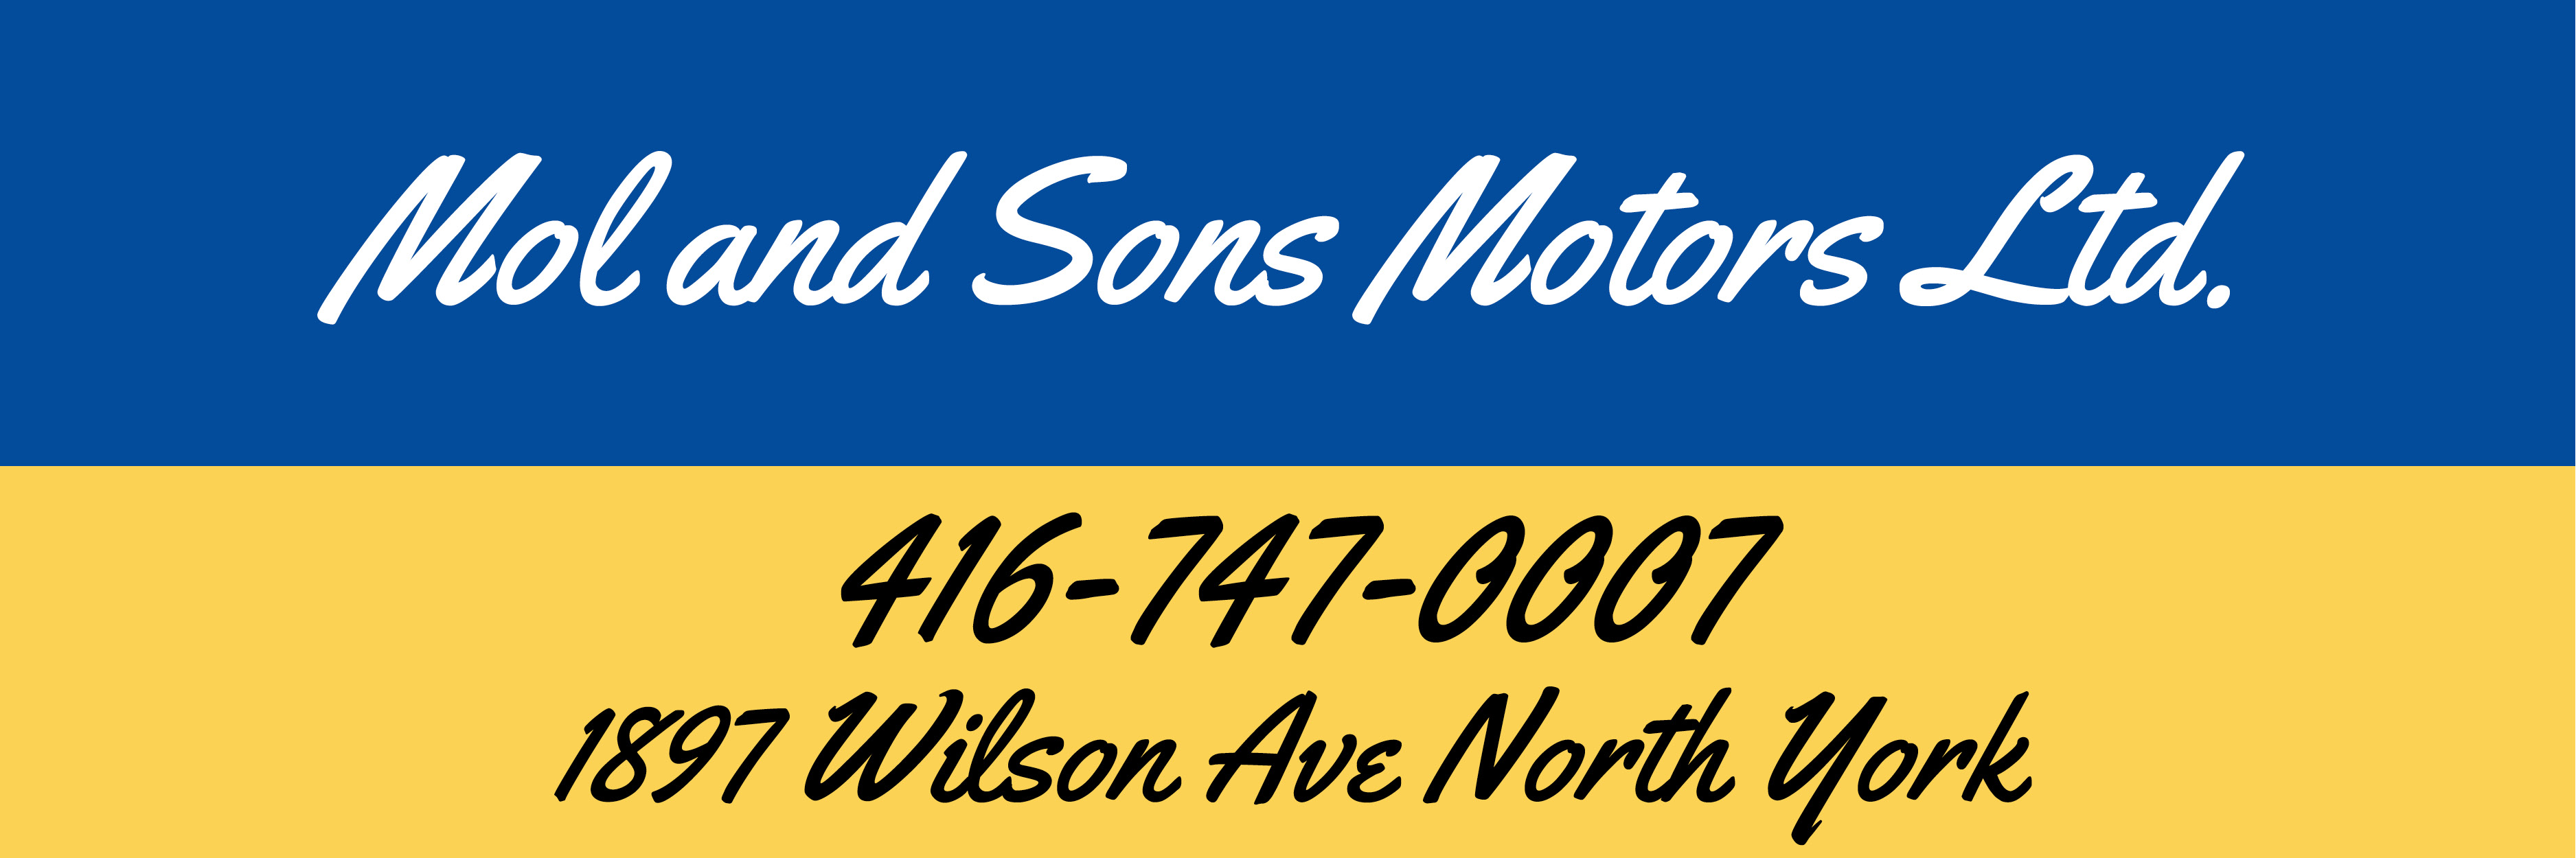 Mol and Sons Motors Ltd.